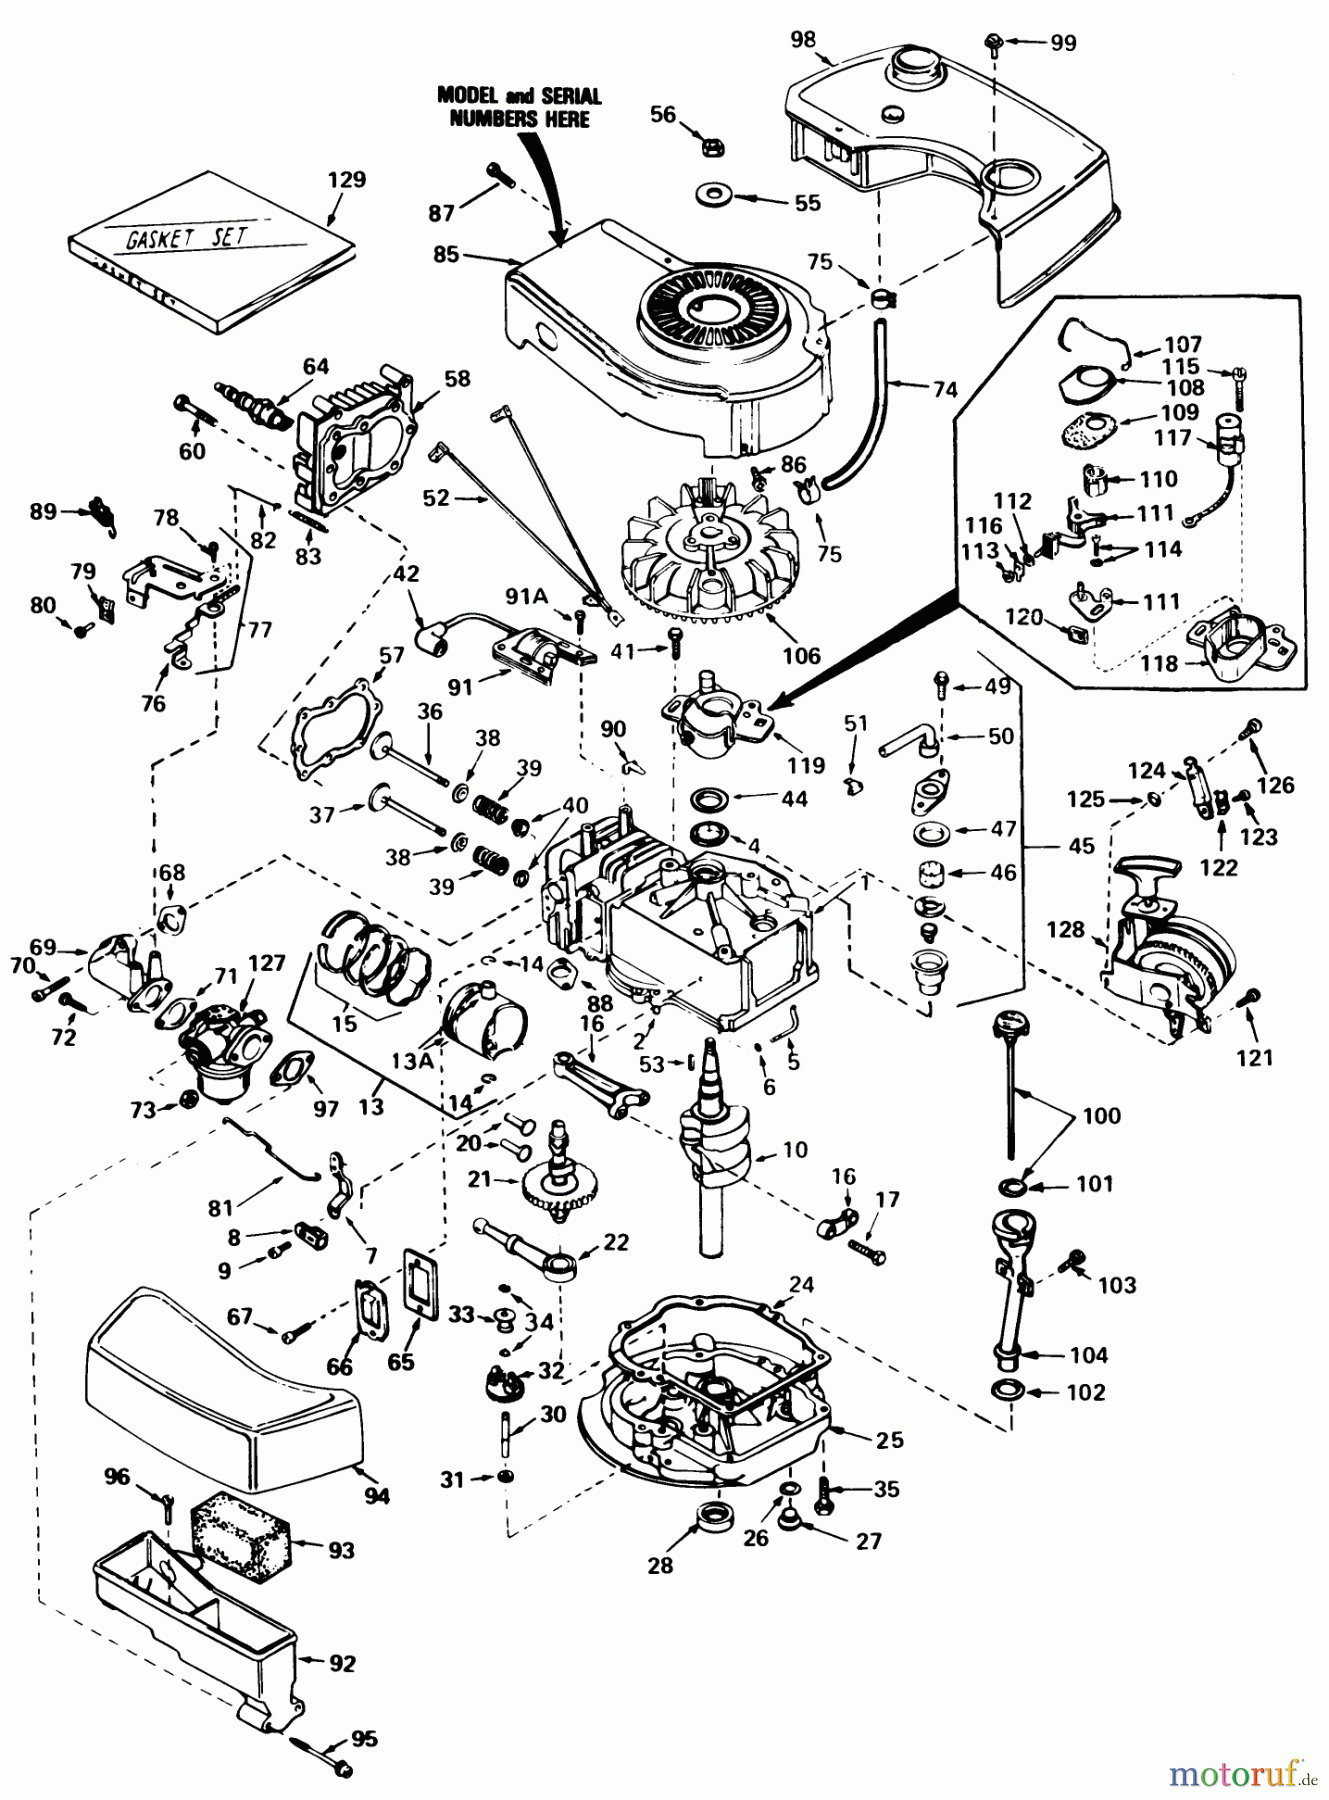  Toro Neu Mowers, Walk-Behind Seite 1 20810 - Toro Lawnmower, 1981 (1000001-1999999) ENGINE TECUMSEH MODEL NO. TNT-100-10063D